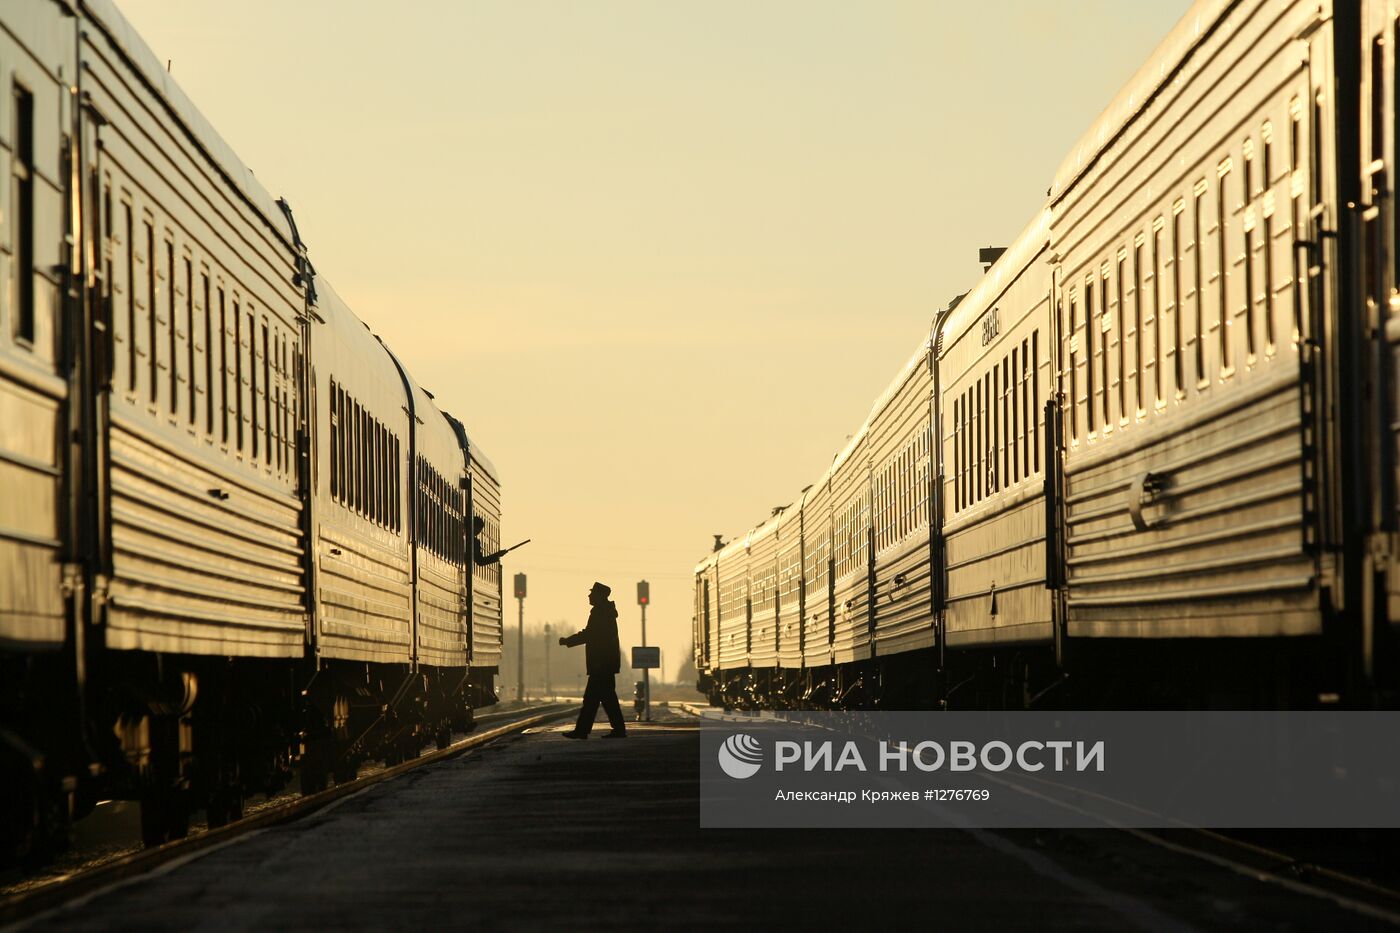 Рейс поезда "За духовное возрождение России"